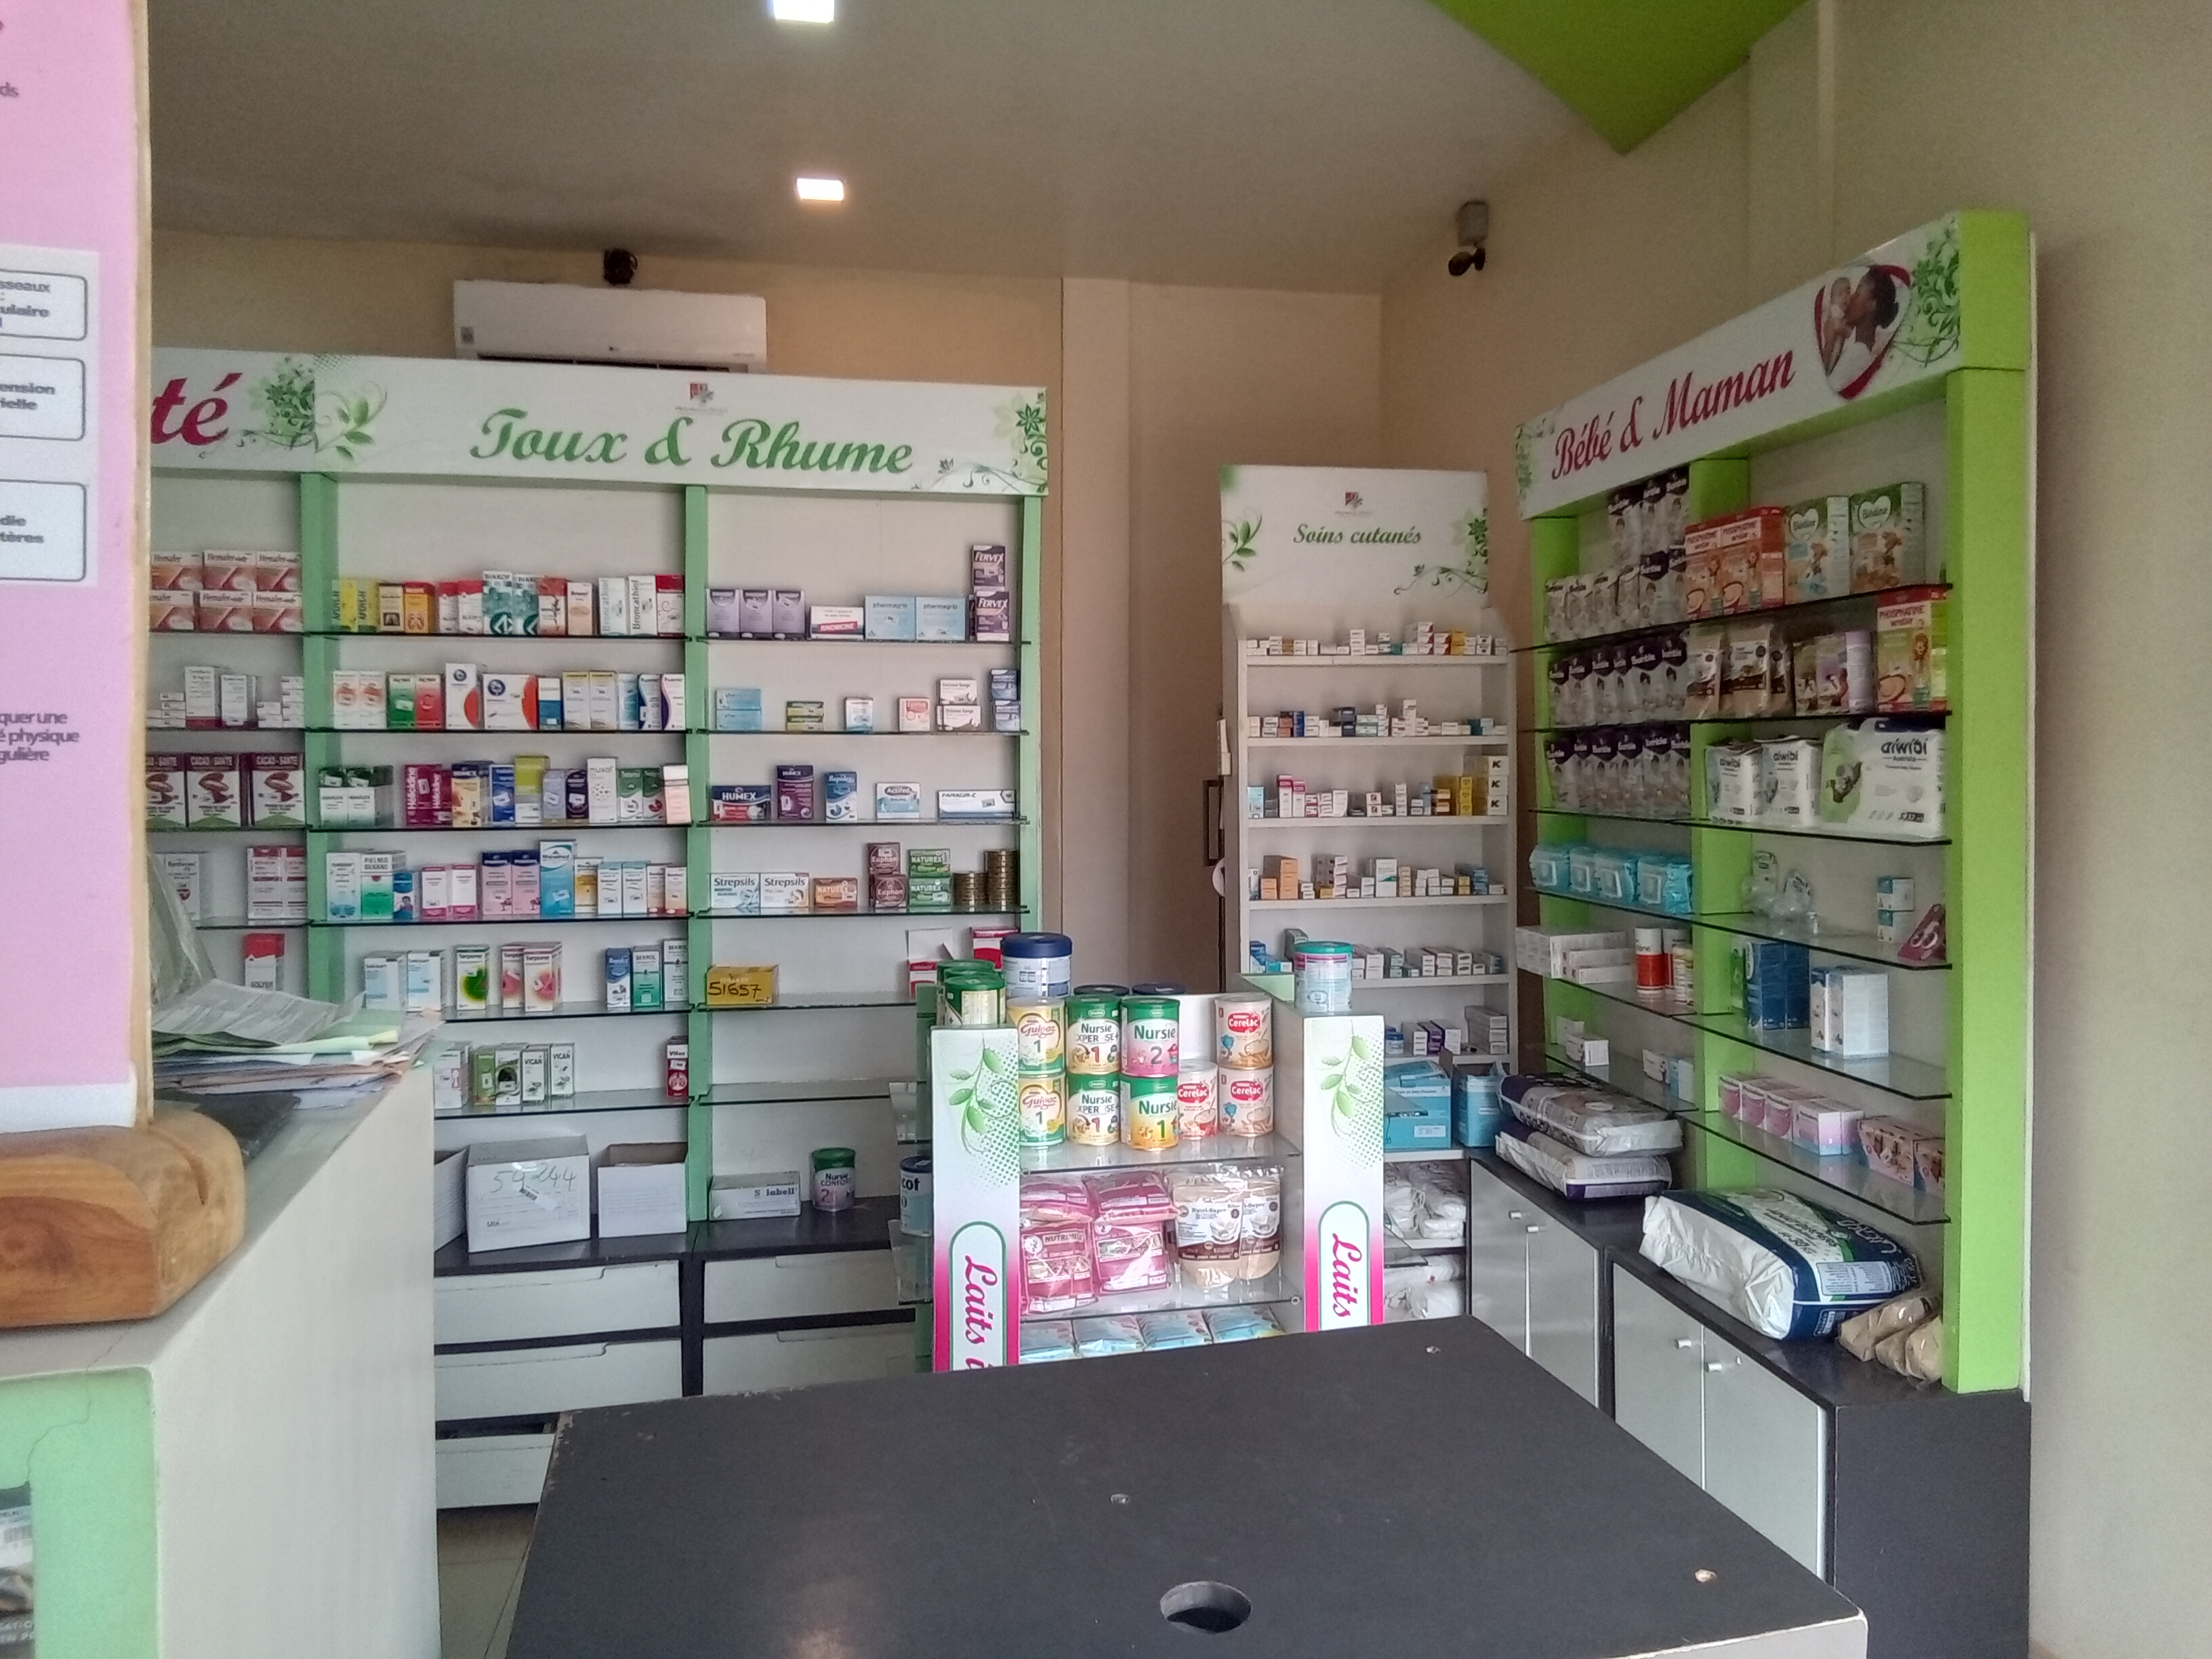 Pharmacie DELALI